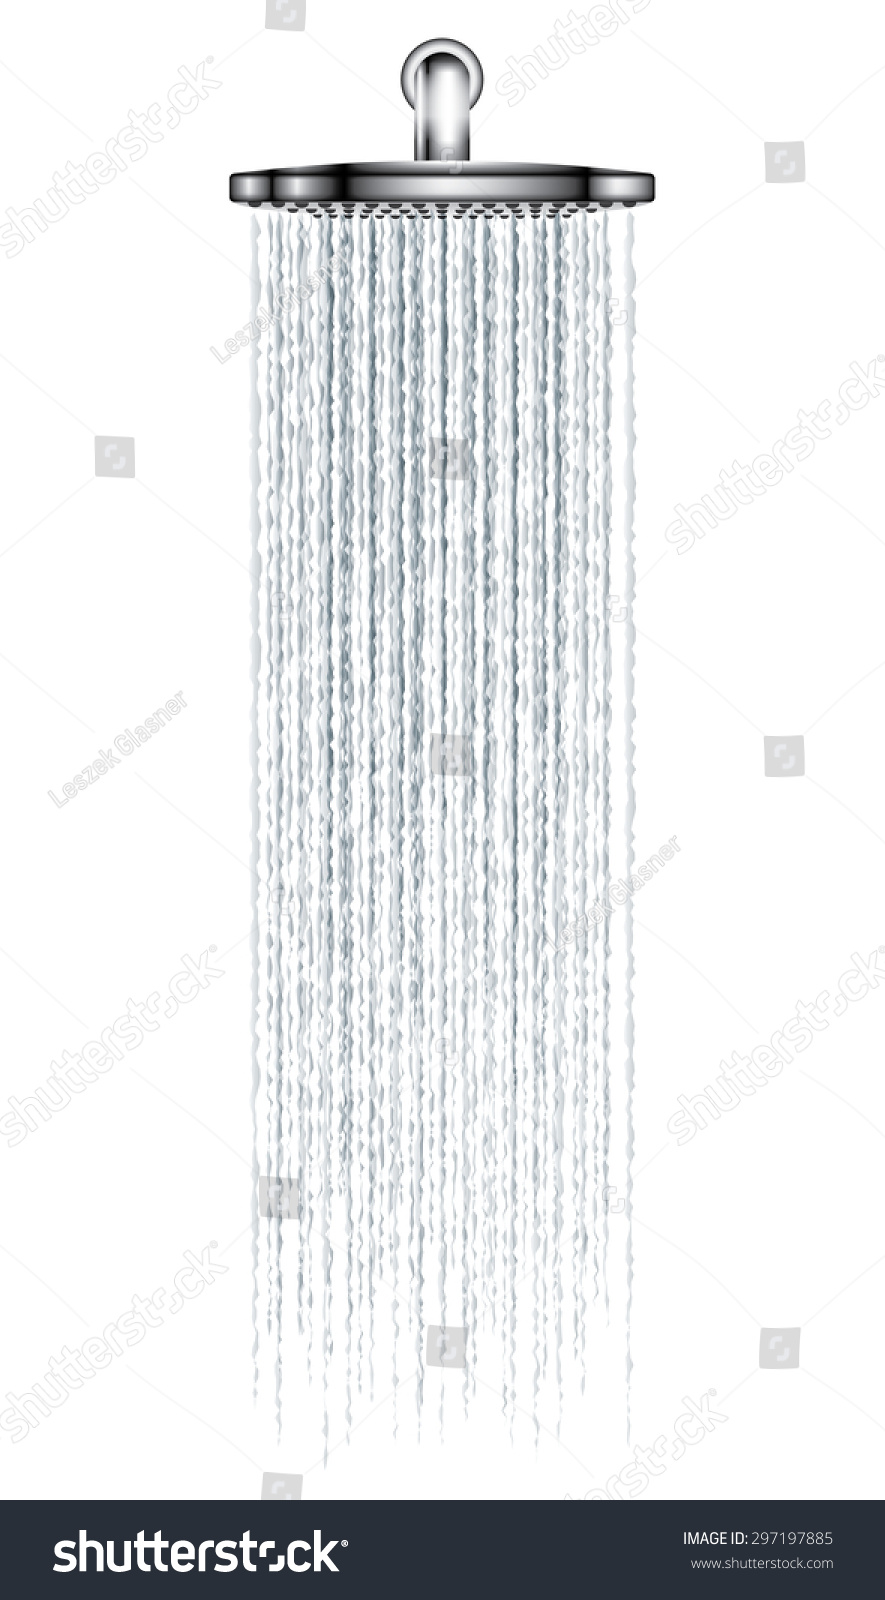 Rain shower on white background vector illustration #297197885